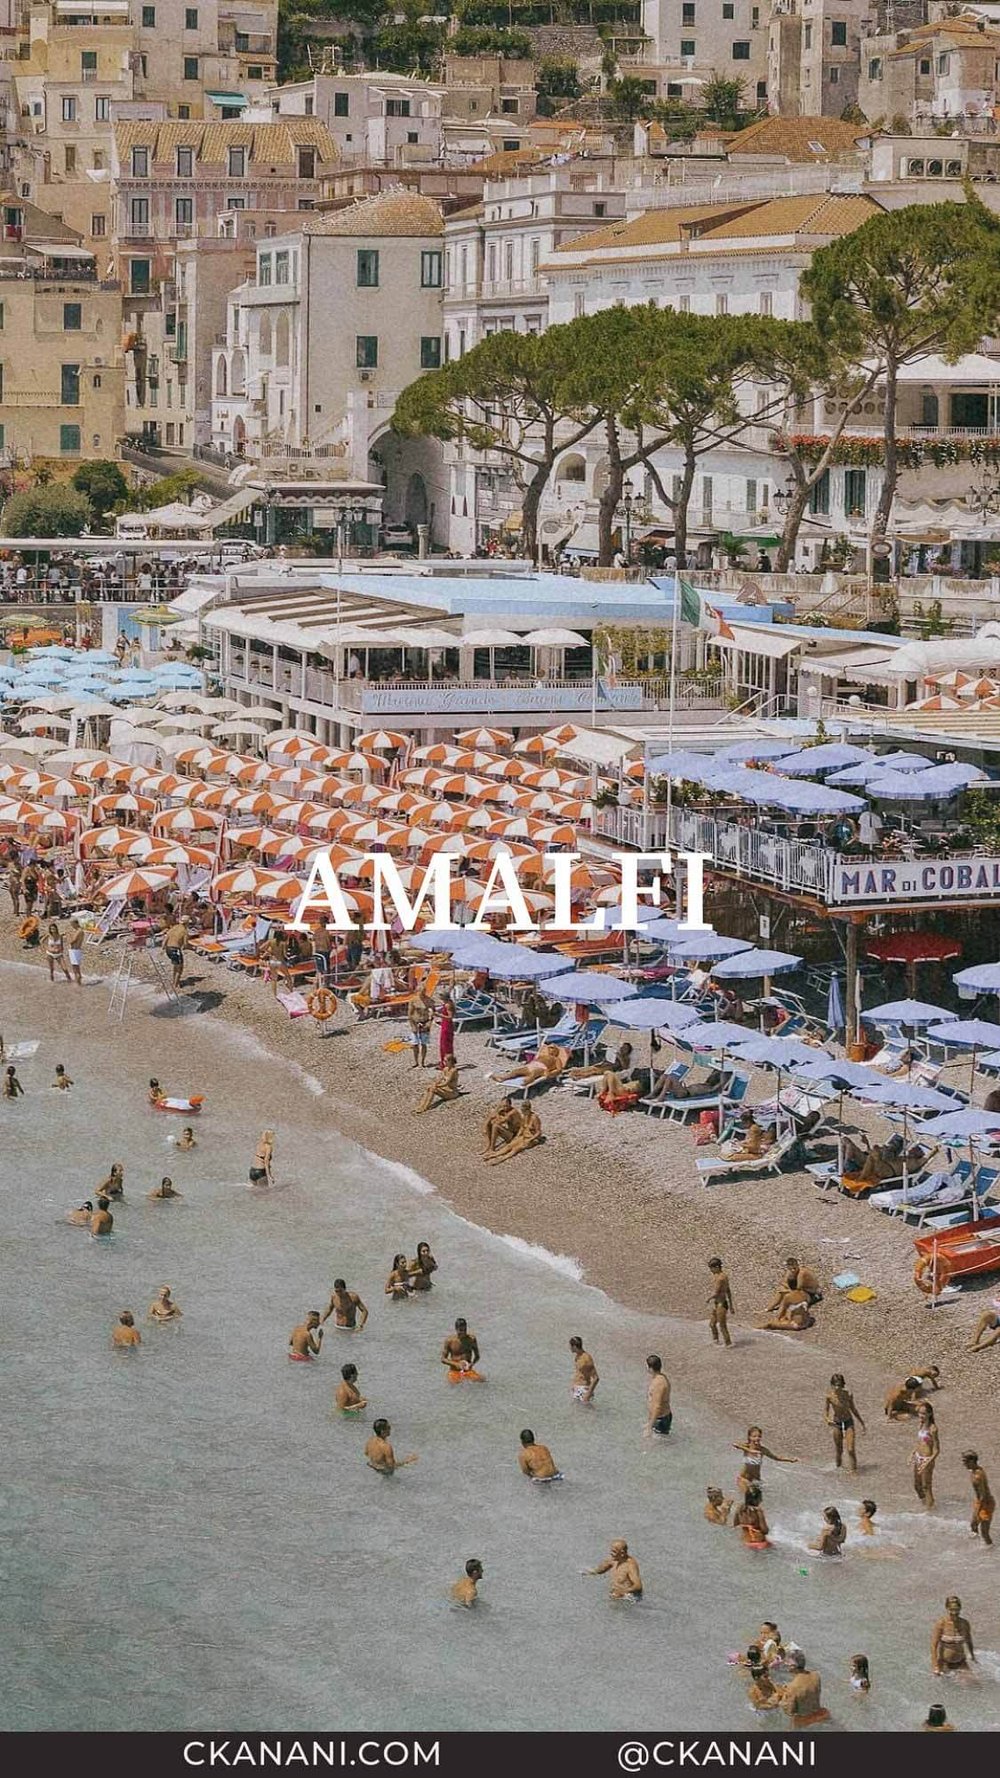 Amalfi Coast Towns You Must Visit: Amalfi